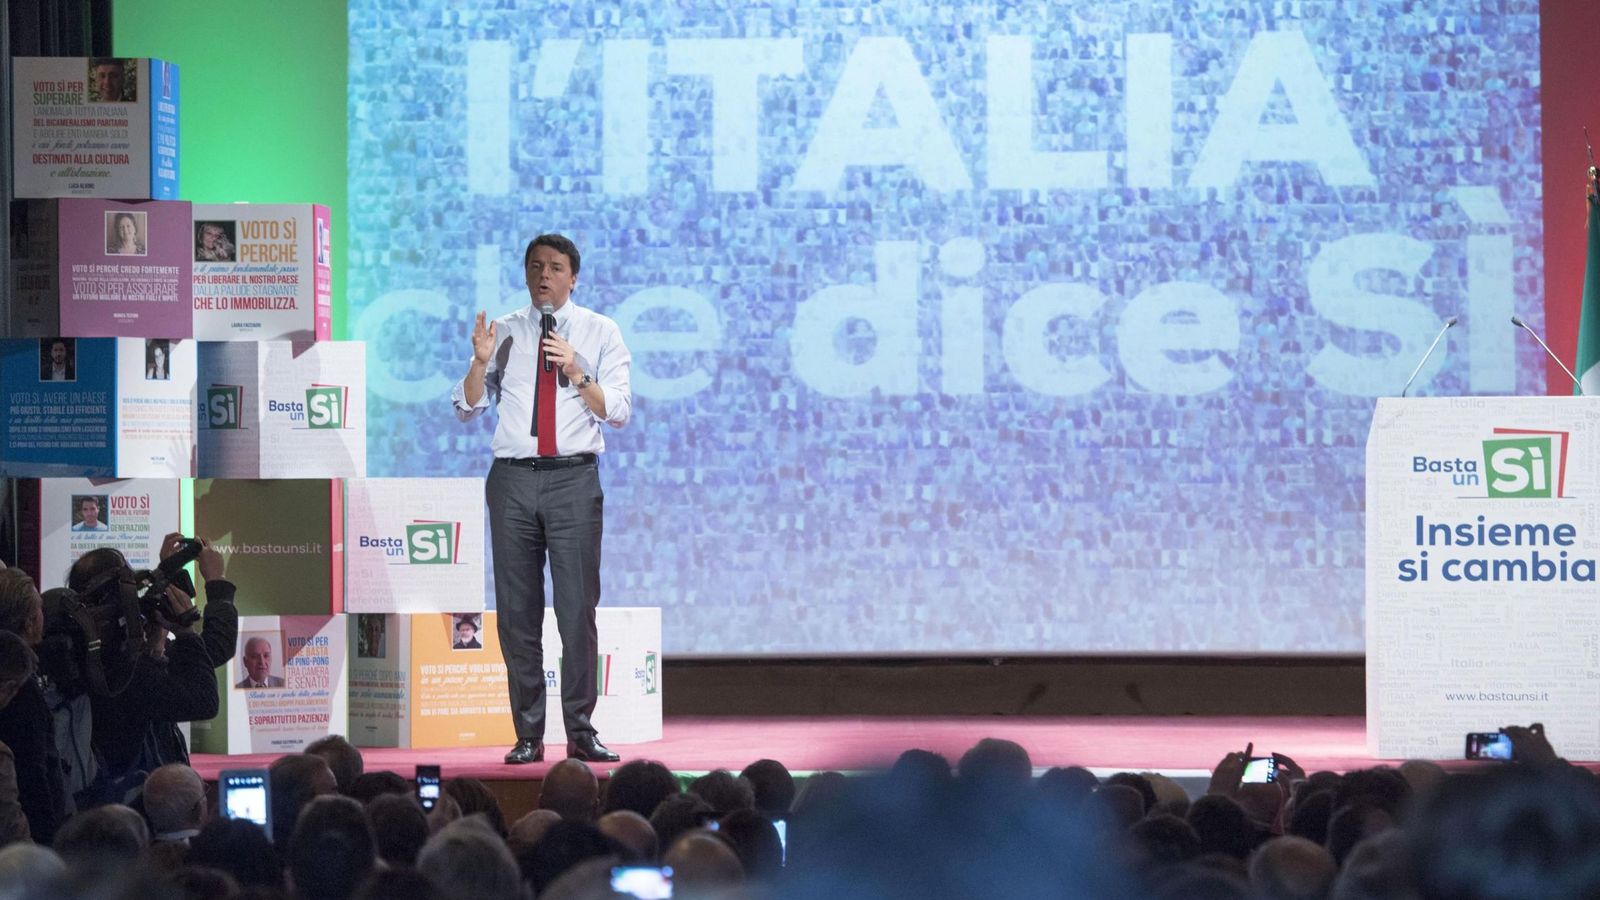 Foto: El primer ministro Matteo Renzi, en un acto de la campaña por el "Sí" en Matera, el 19 de noviembre de 2016 (EFE)